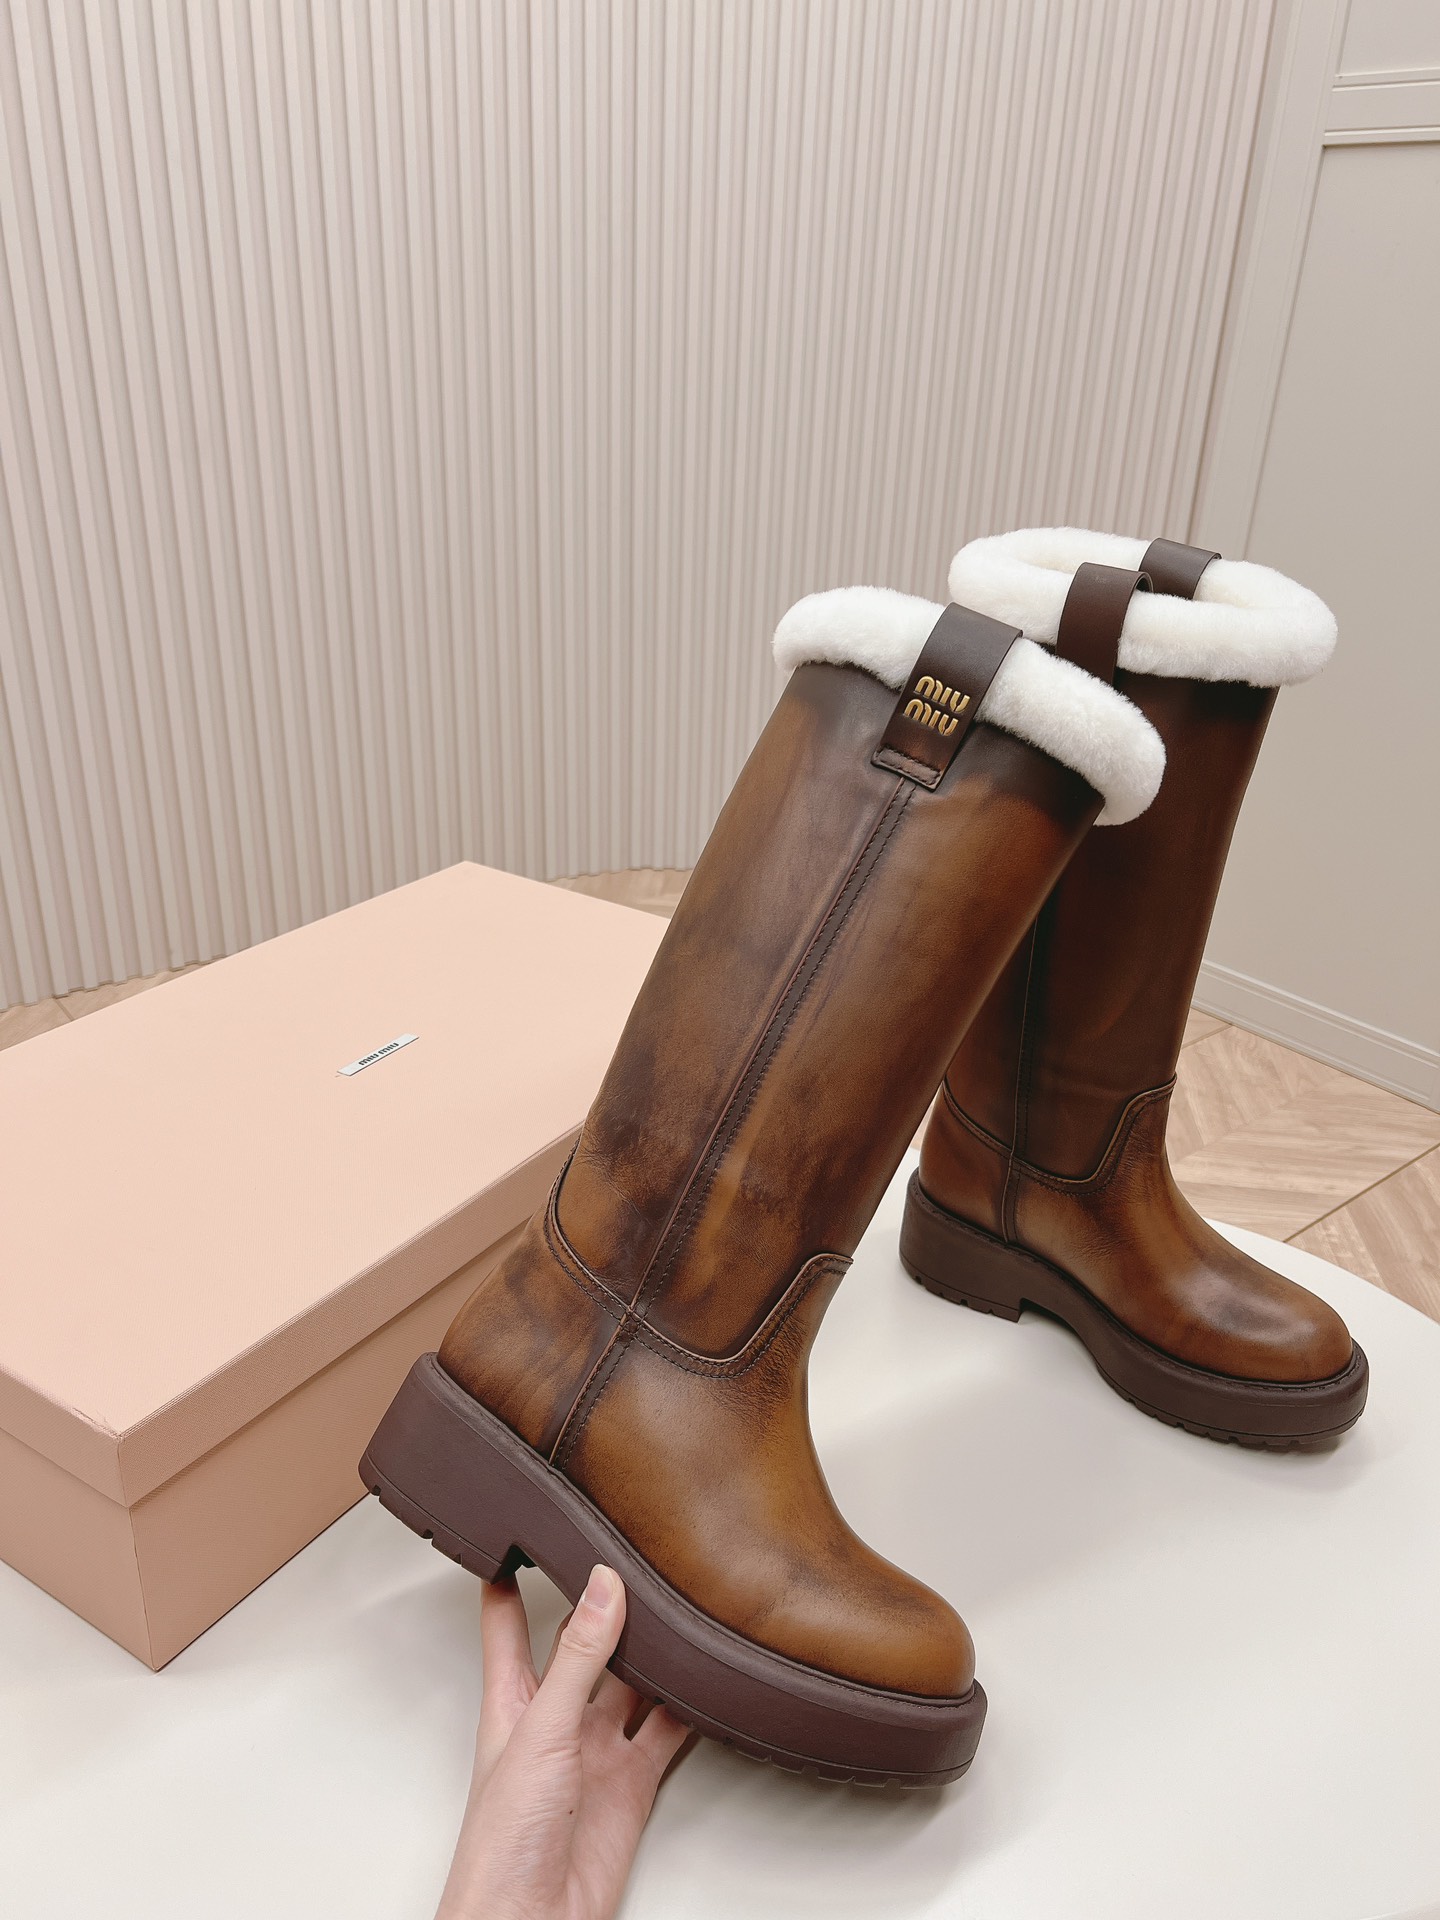 レディース miumiu 靴偽物 レディースシューズ 牛革 ファッション 長筒靴 ブラウン_4